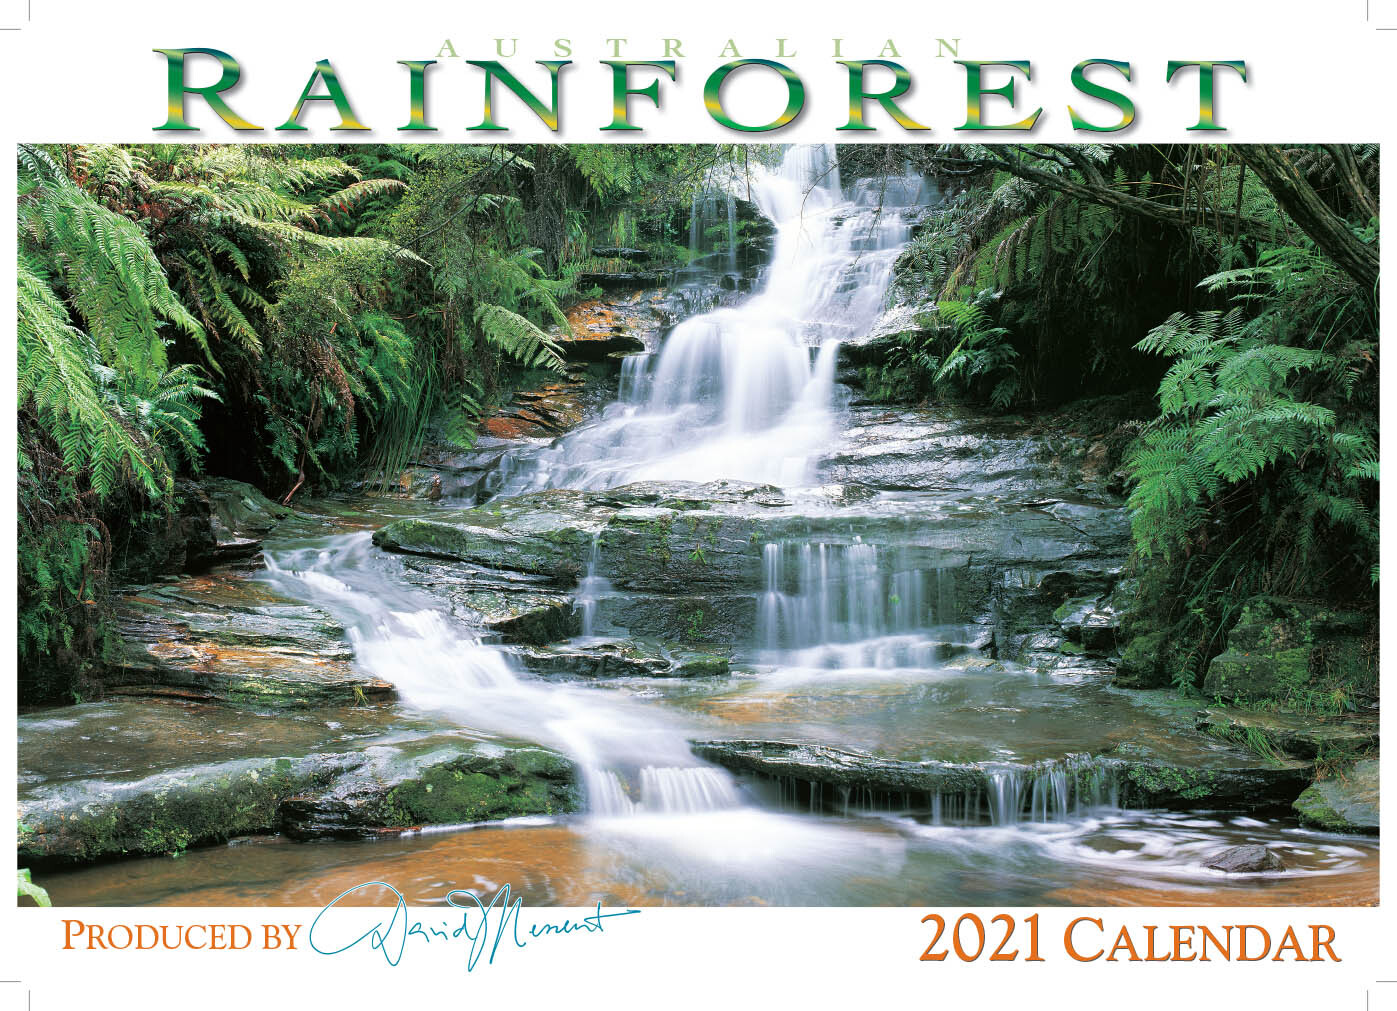 Rainforest Calendar 2021 | Calendar APR 2021